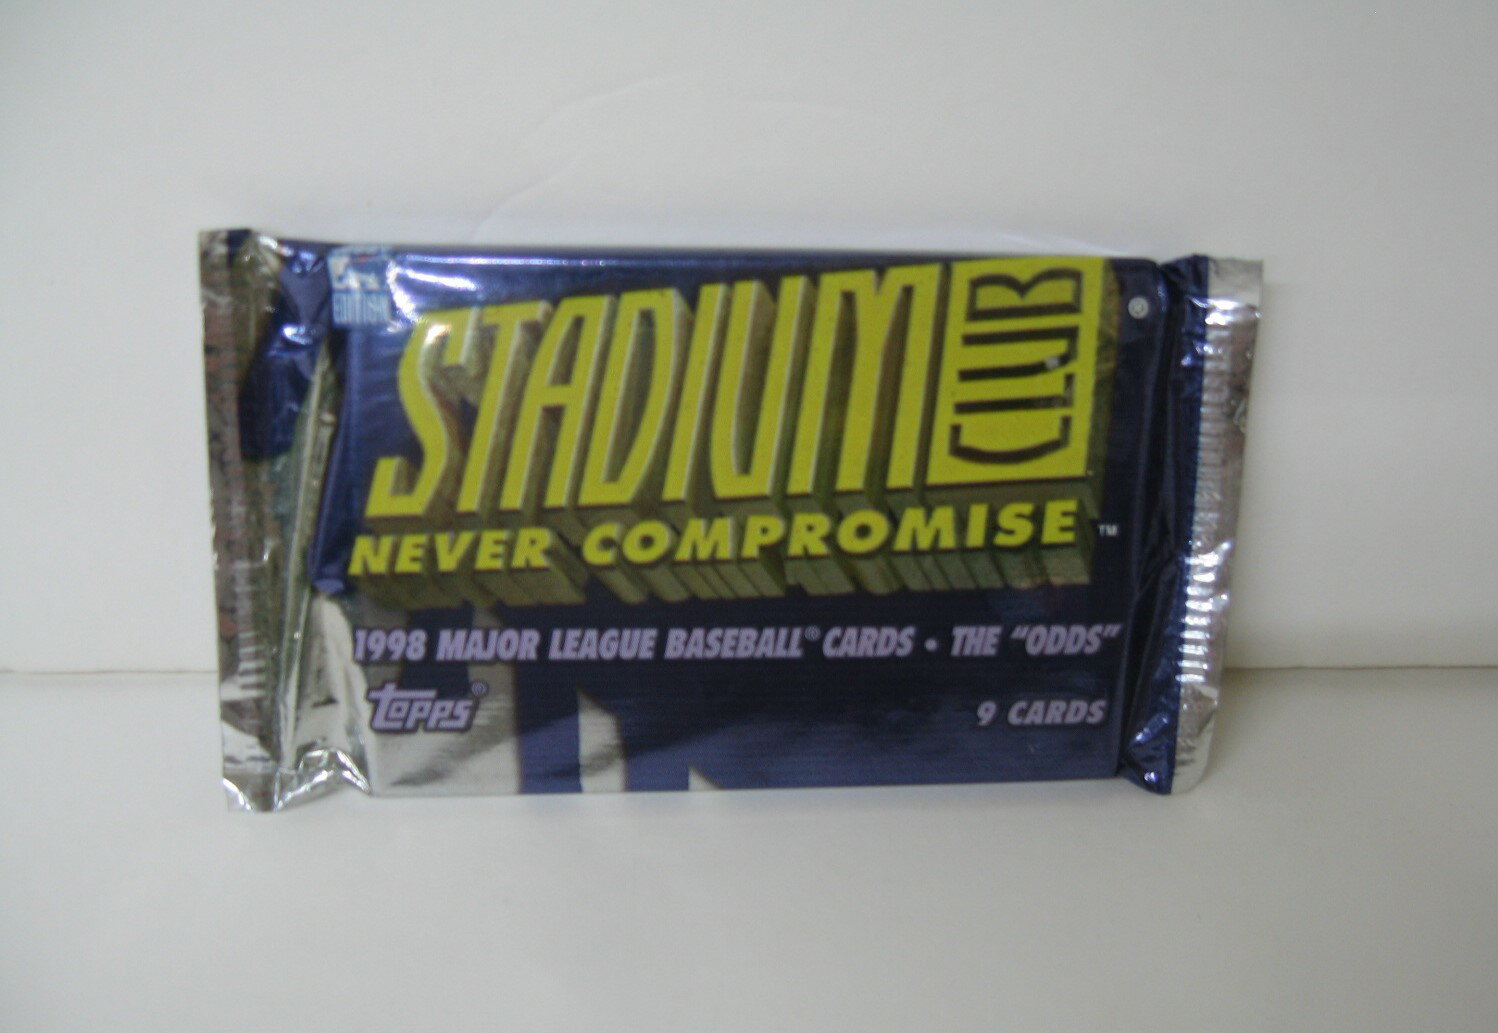 US版 トップス STADIUM CLUB NEVER COMPROMISE 1998 メジャーリーグ ベースボールカード 1パック 9枚入り(MLB toppsトレーディングカード)